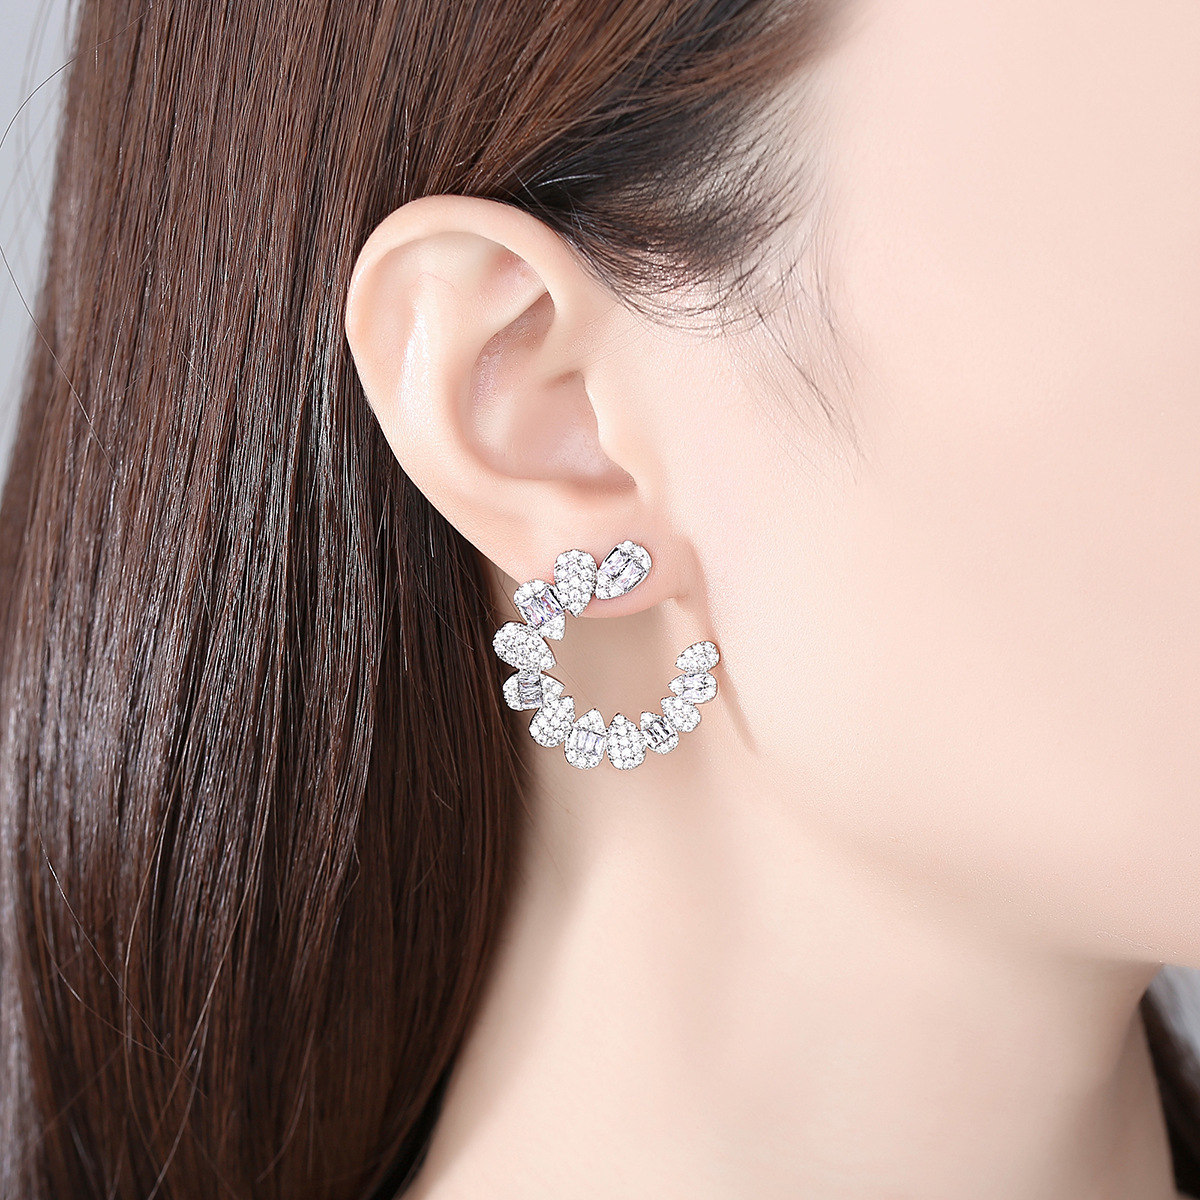 Zircon stud earrings creative earrings for women